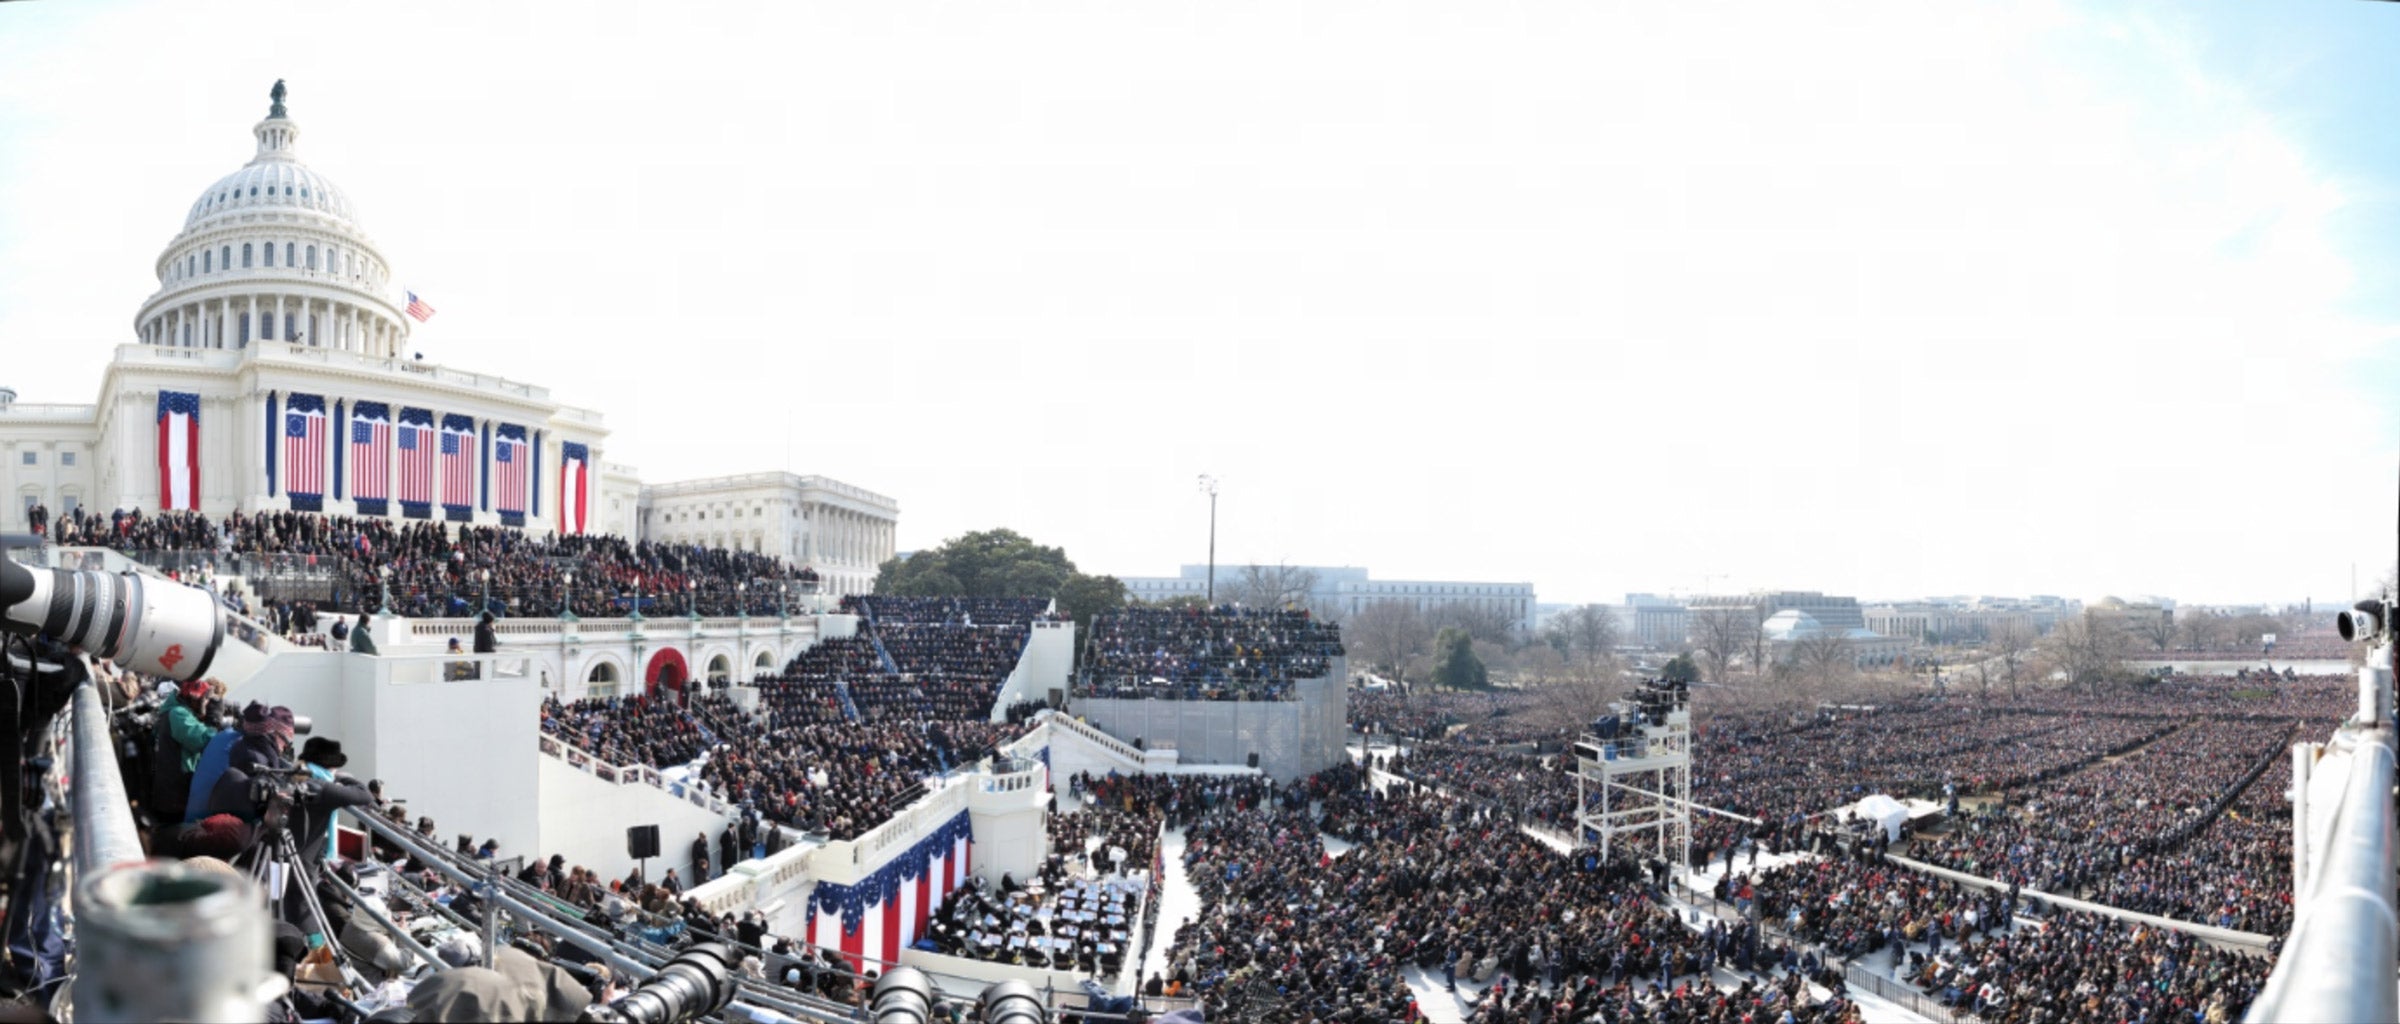 Obama's Inauguration panoramic photo